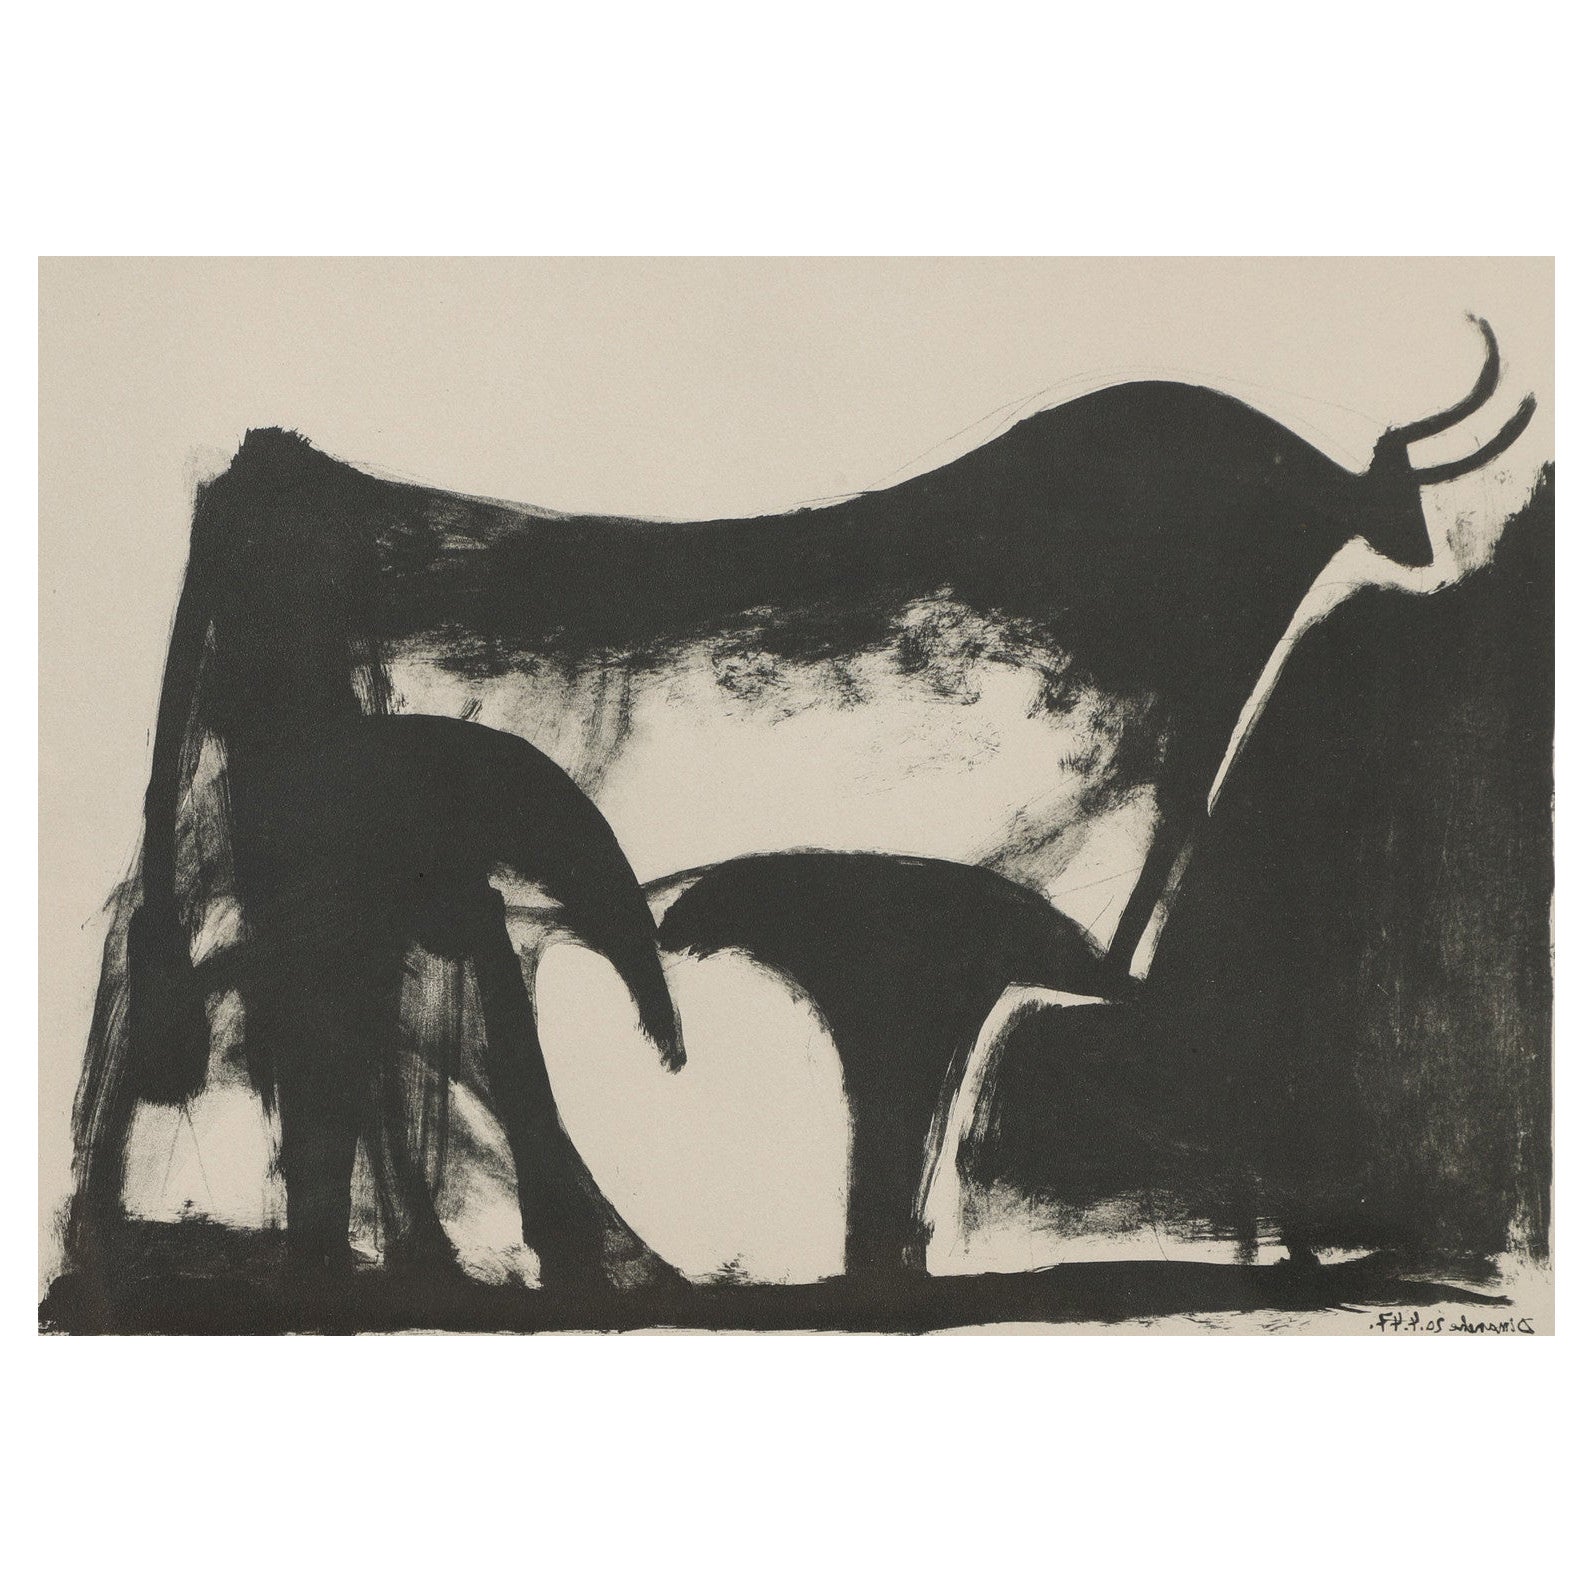 D'après la lithographie de Pablo Picasso "The Black Bull